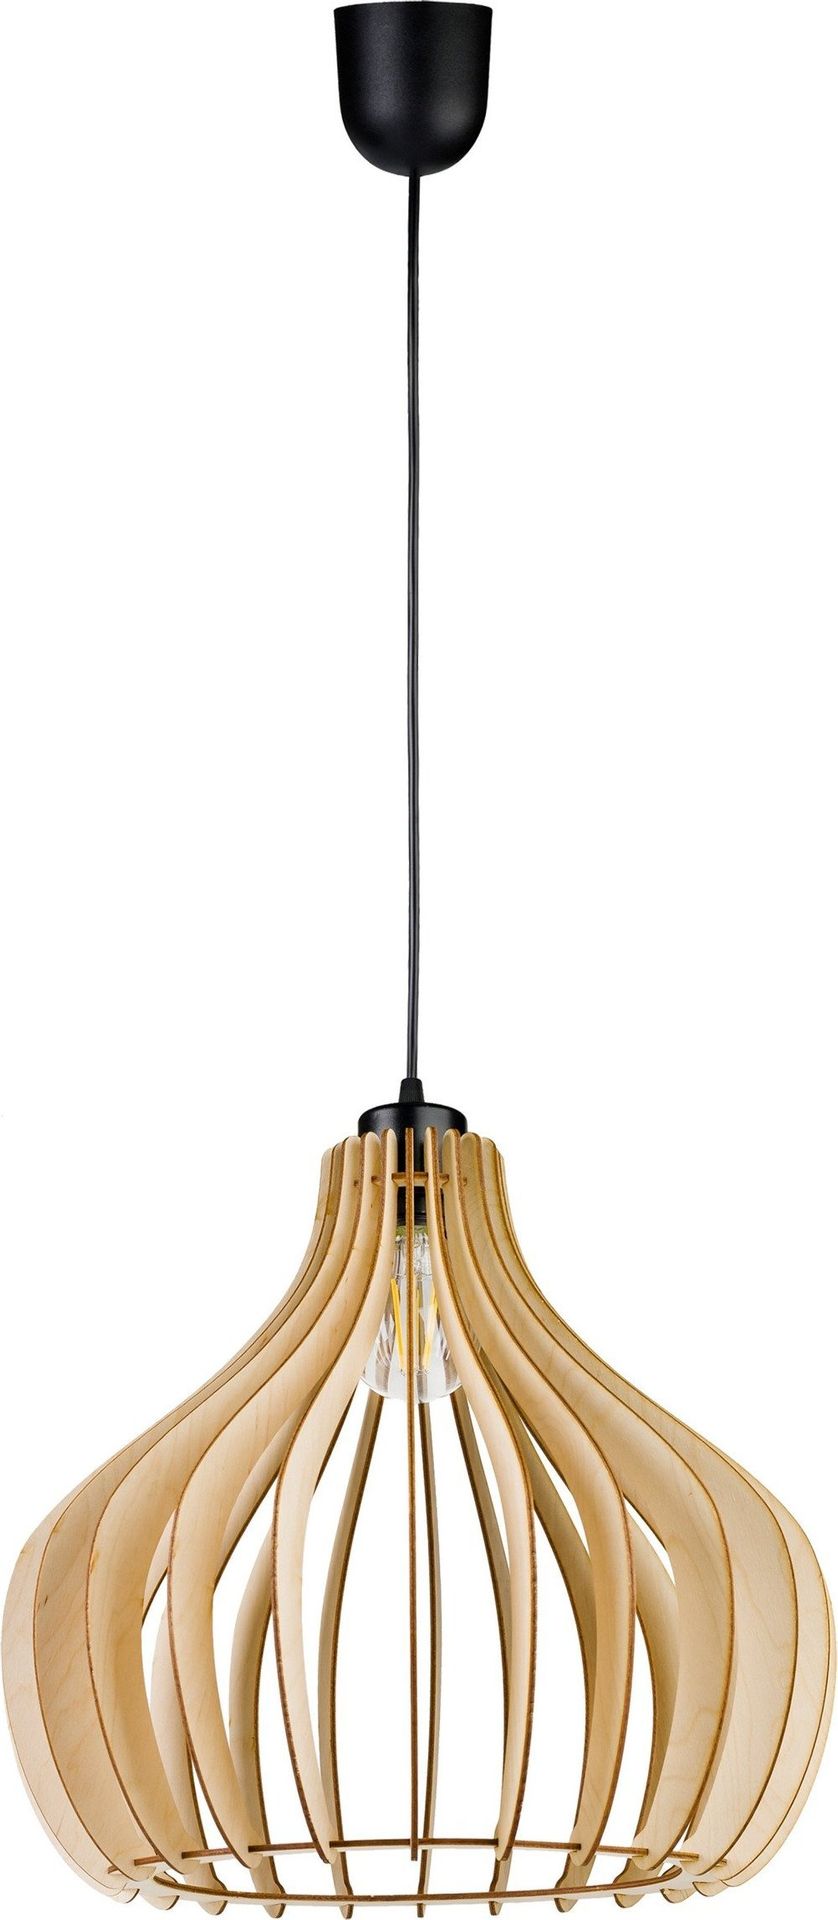 Lampa wisząca Orno YASIN 400 lampa wisząca, moc max. 1x60W, E27, czarna, drewno